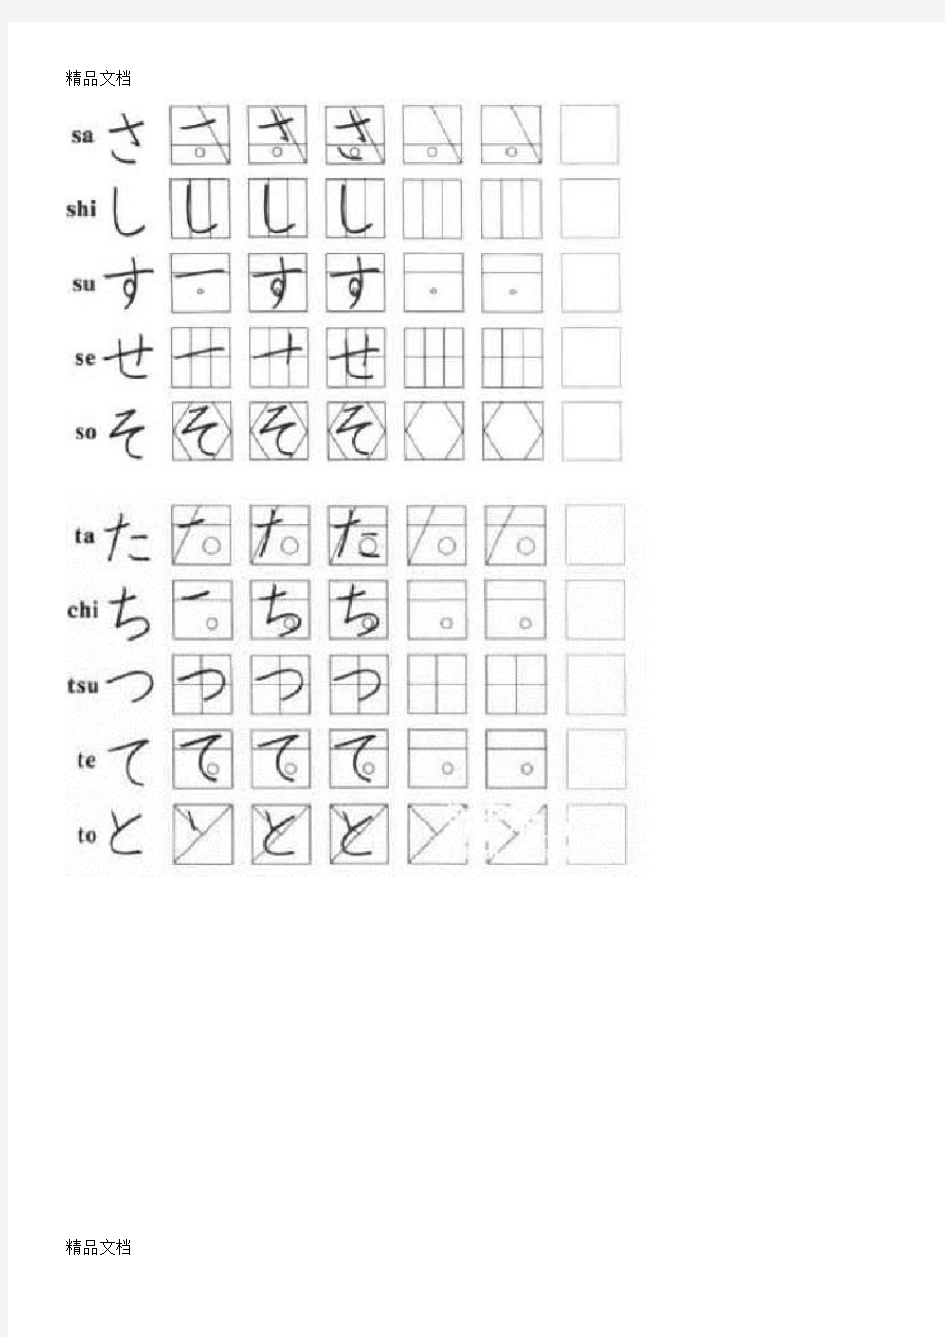 最新日语五十音图手写体A4竖排练习临摹字帖(平假名+片假名)